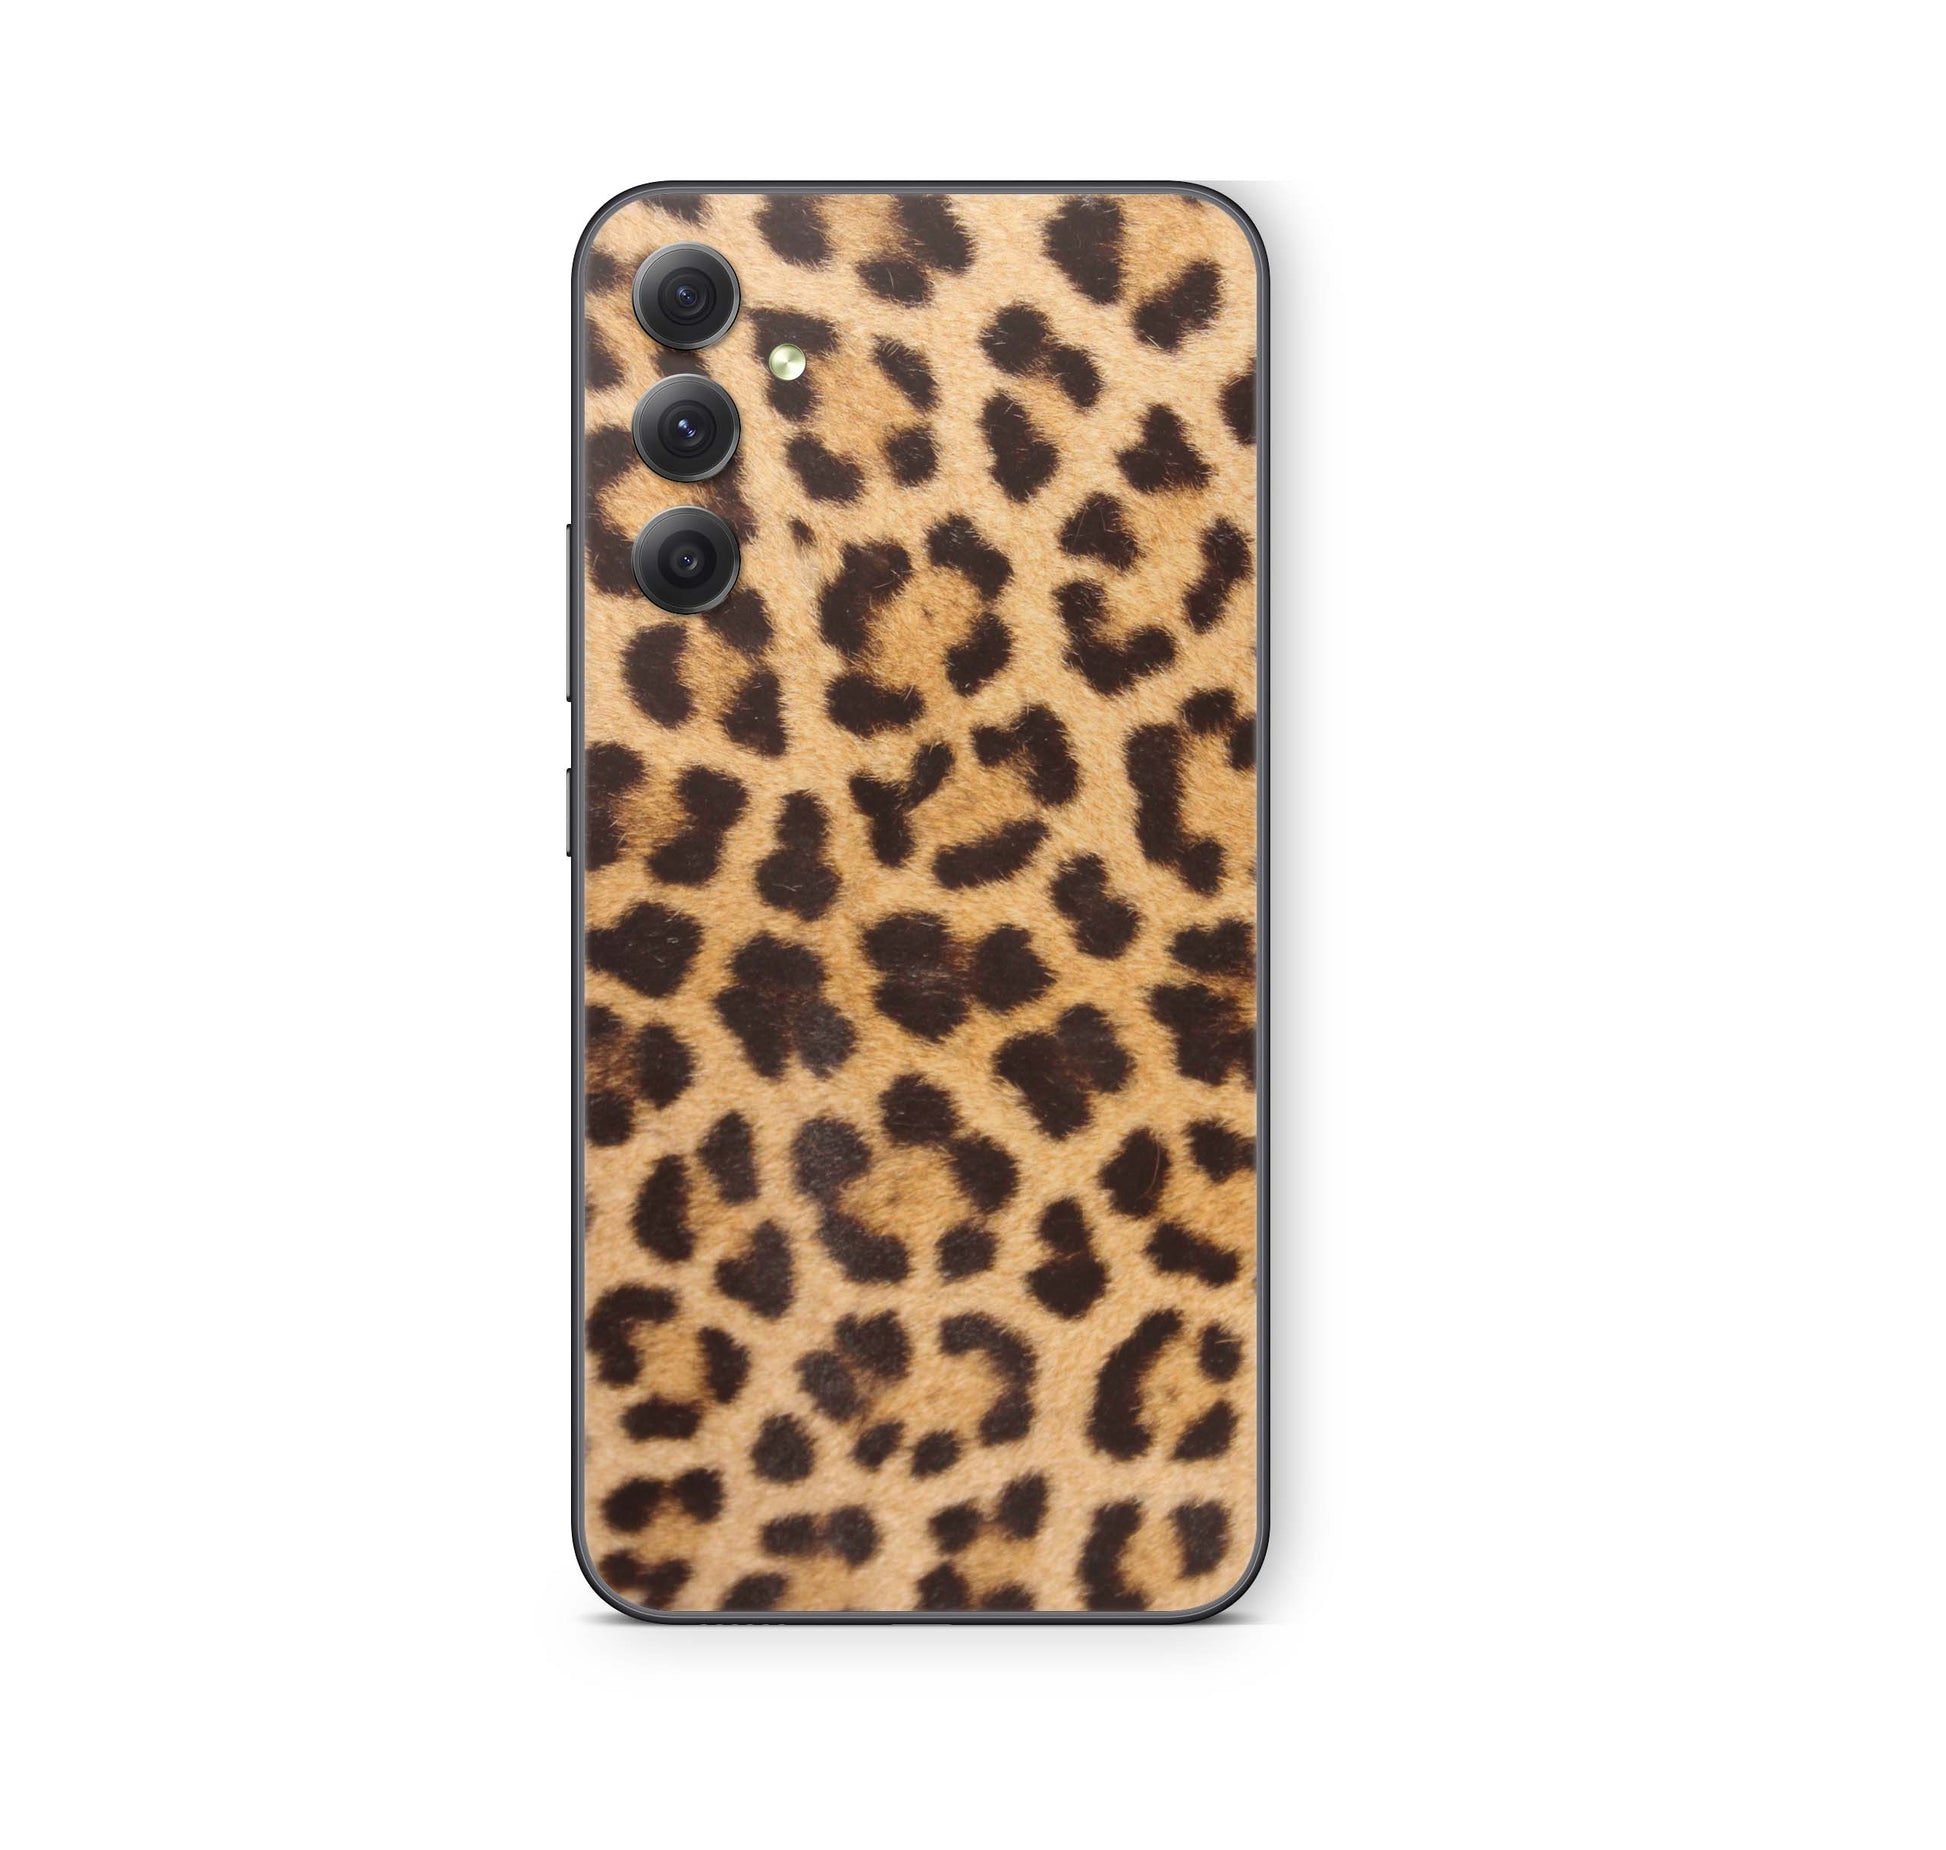 Samsung Galaxy A52 Skin Schutzfolie Aufkleber Skins Design Leopardenfell Elektronik-Sticker & -Aufkleber skins4u   